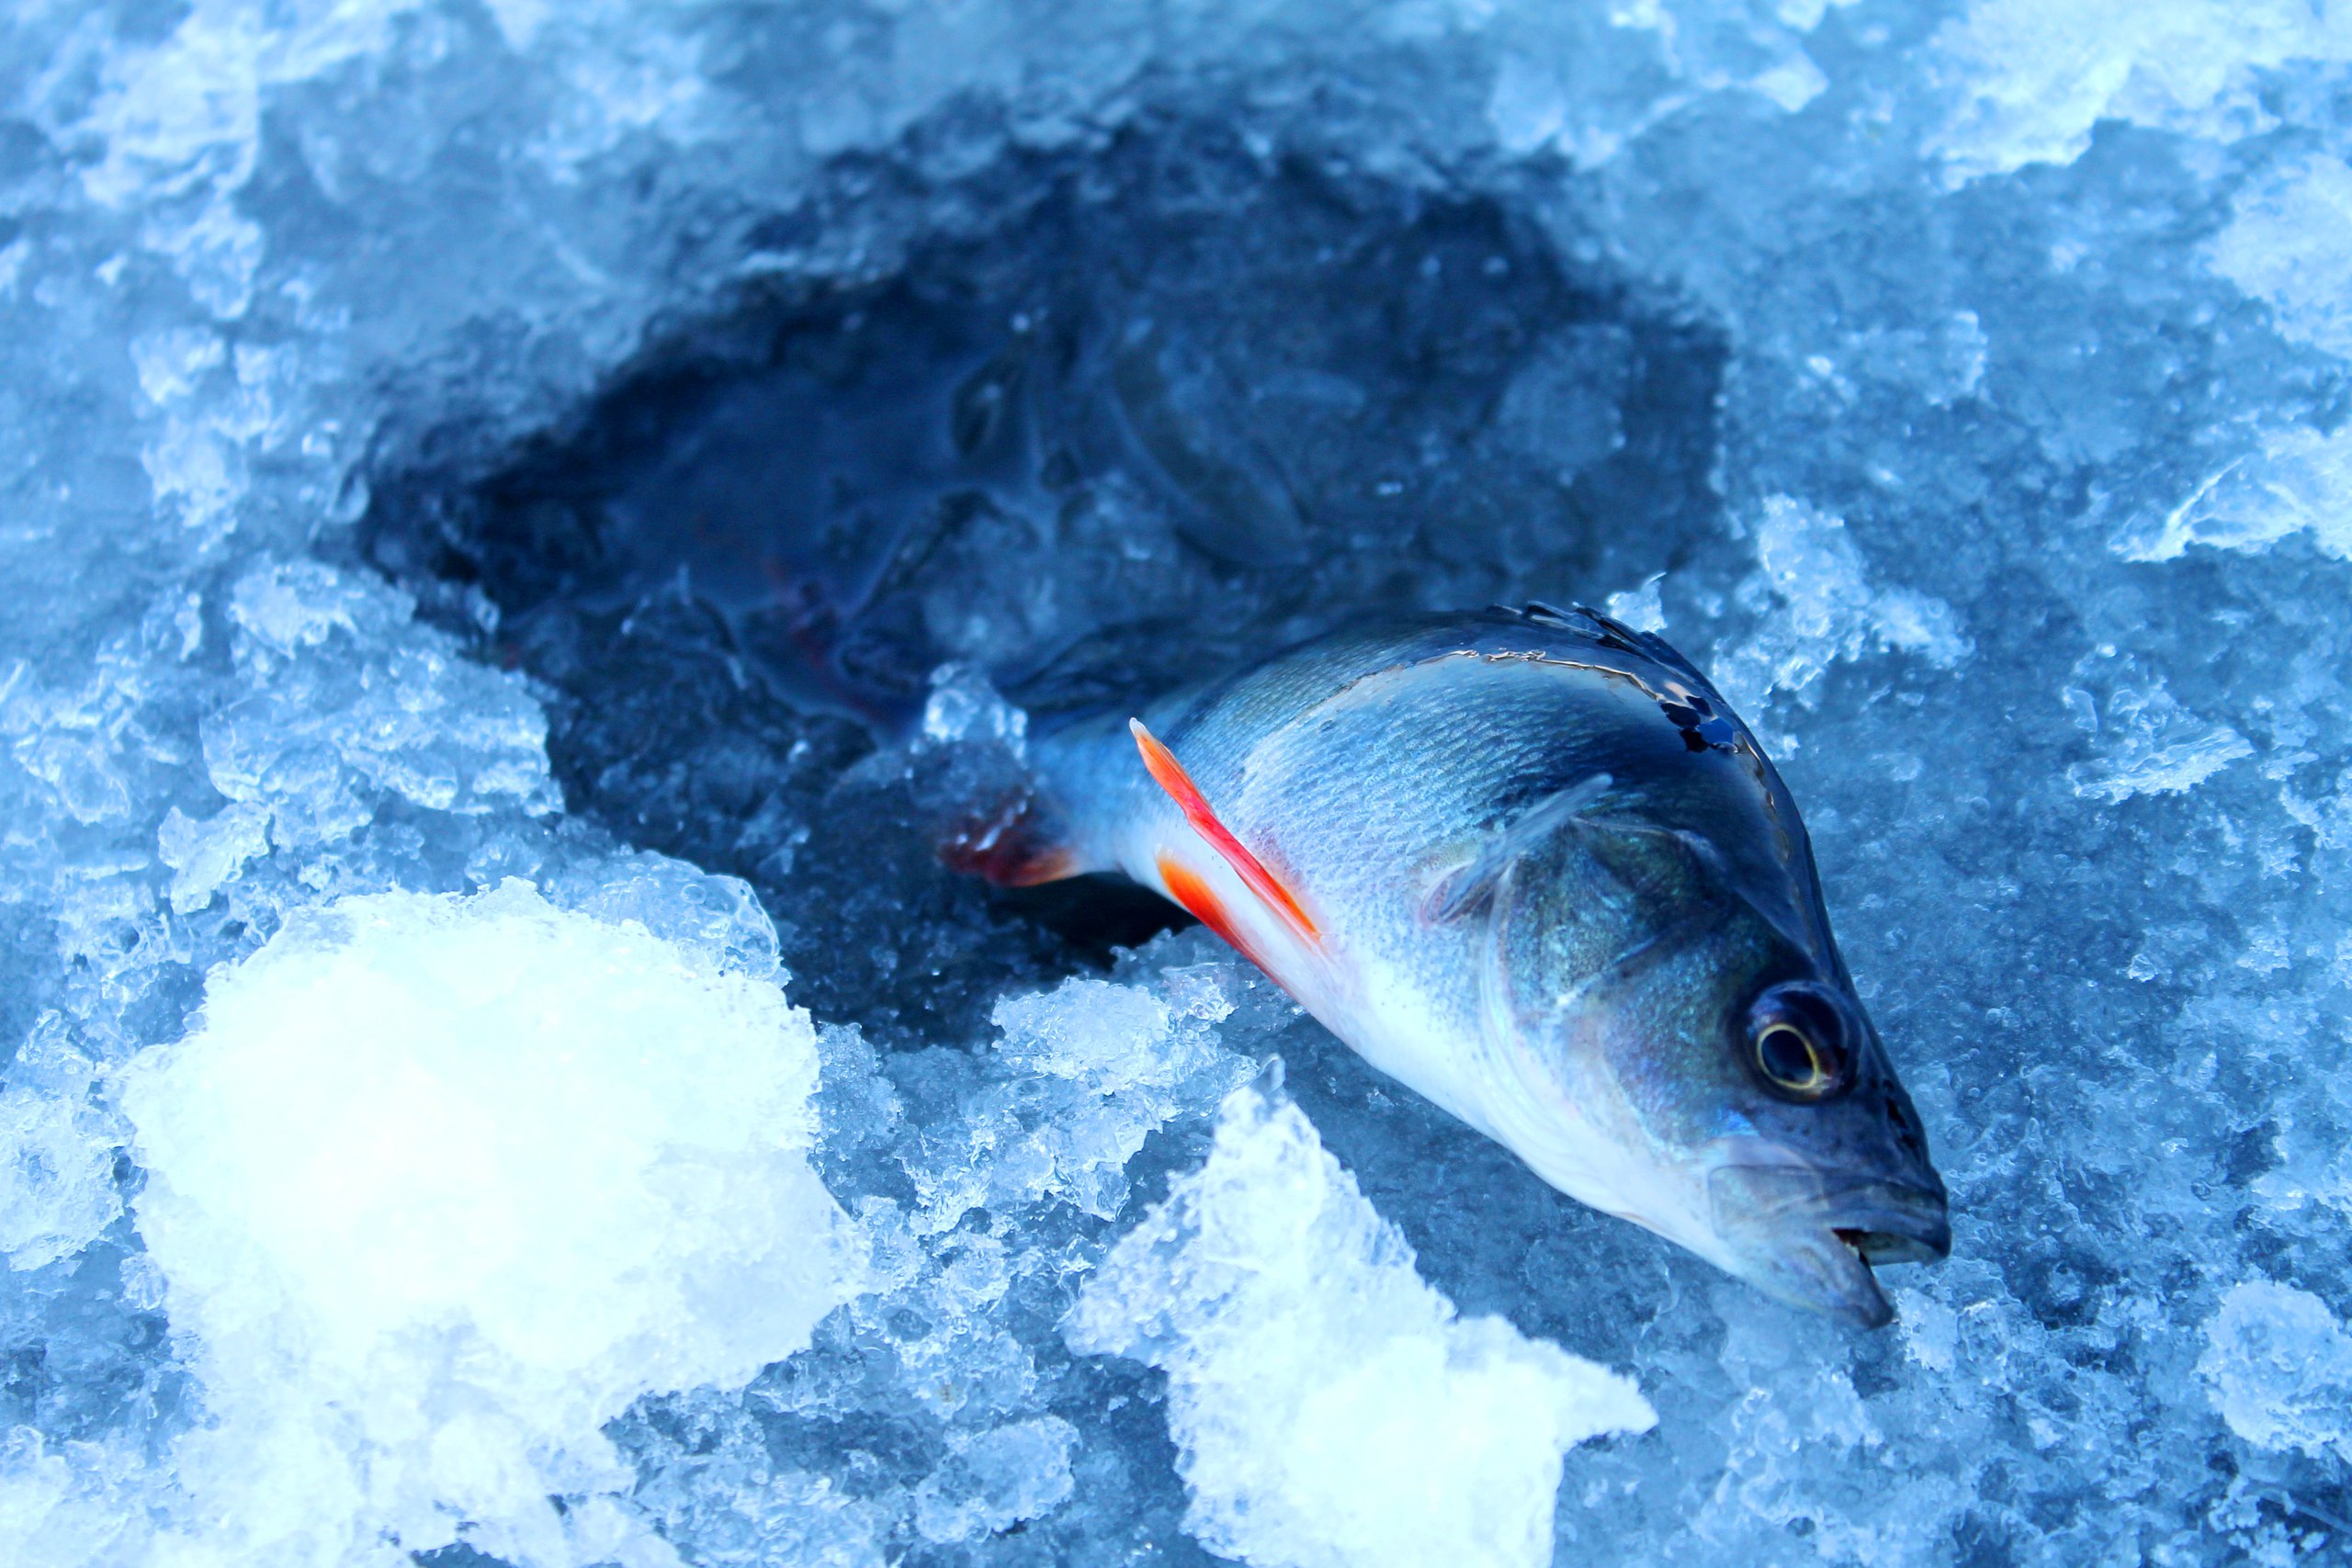  Следы на снегу.Нахоженные тропинки в снегу расходятся в ... | Отчеты о рыбалке в Беларуси